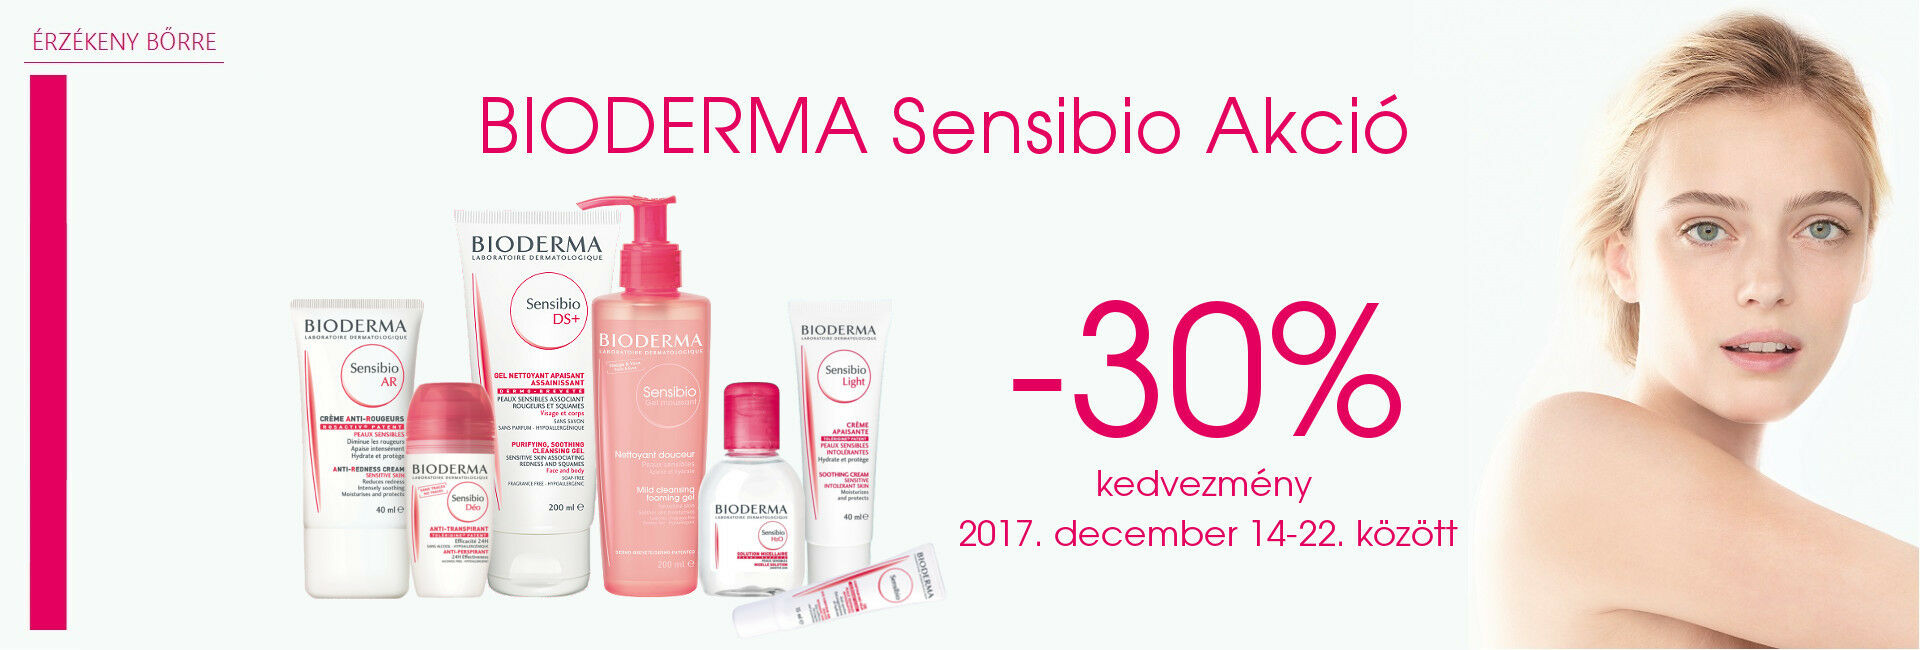 Bioderma Sensibio termékek érzékeny bőrre 30% kedvezménnyel!